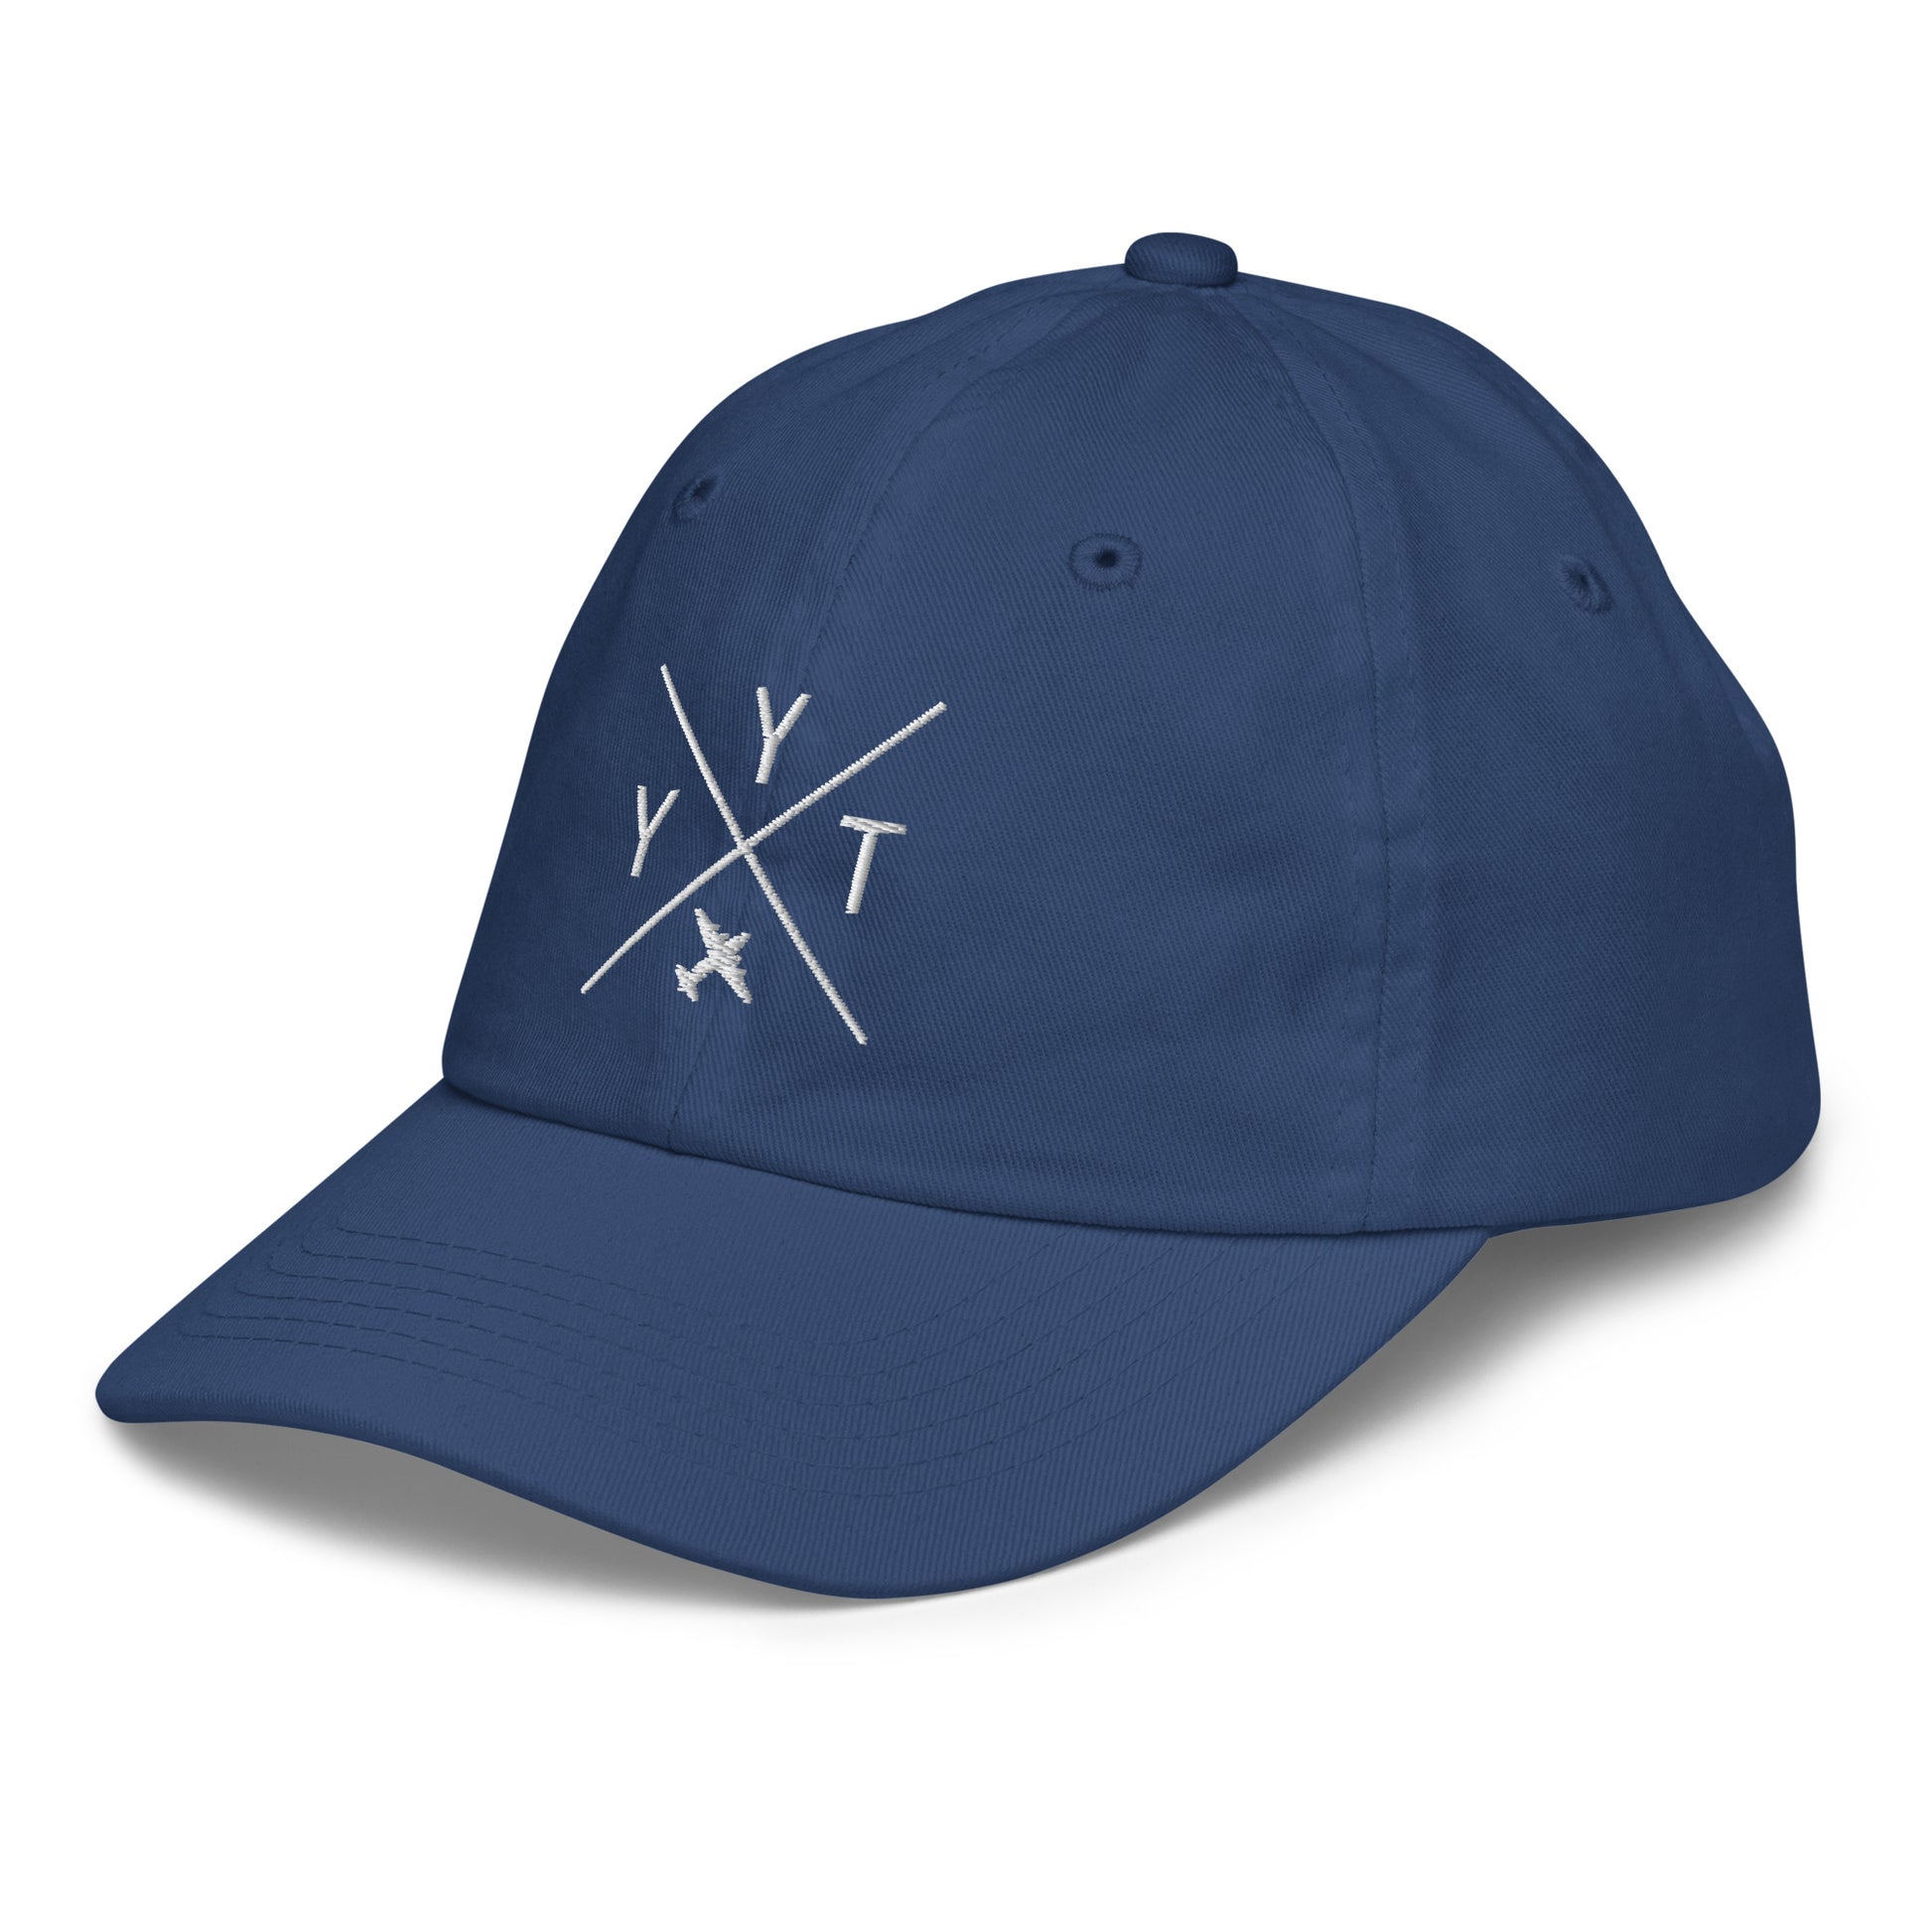 Crossed-X Kid's Baseball Cap - White • YYT St. John's • YHM Designs - Image 21